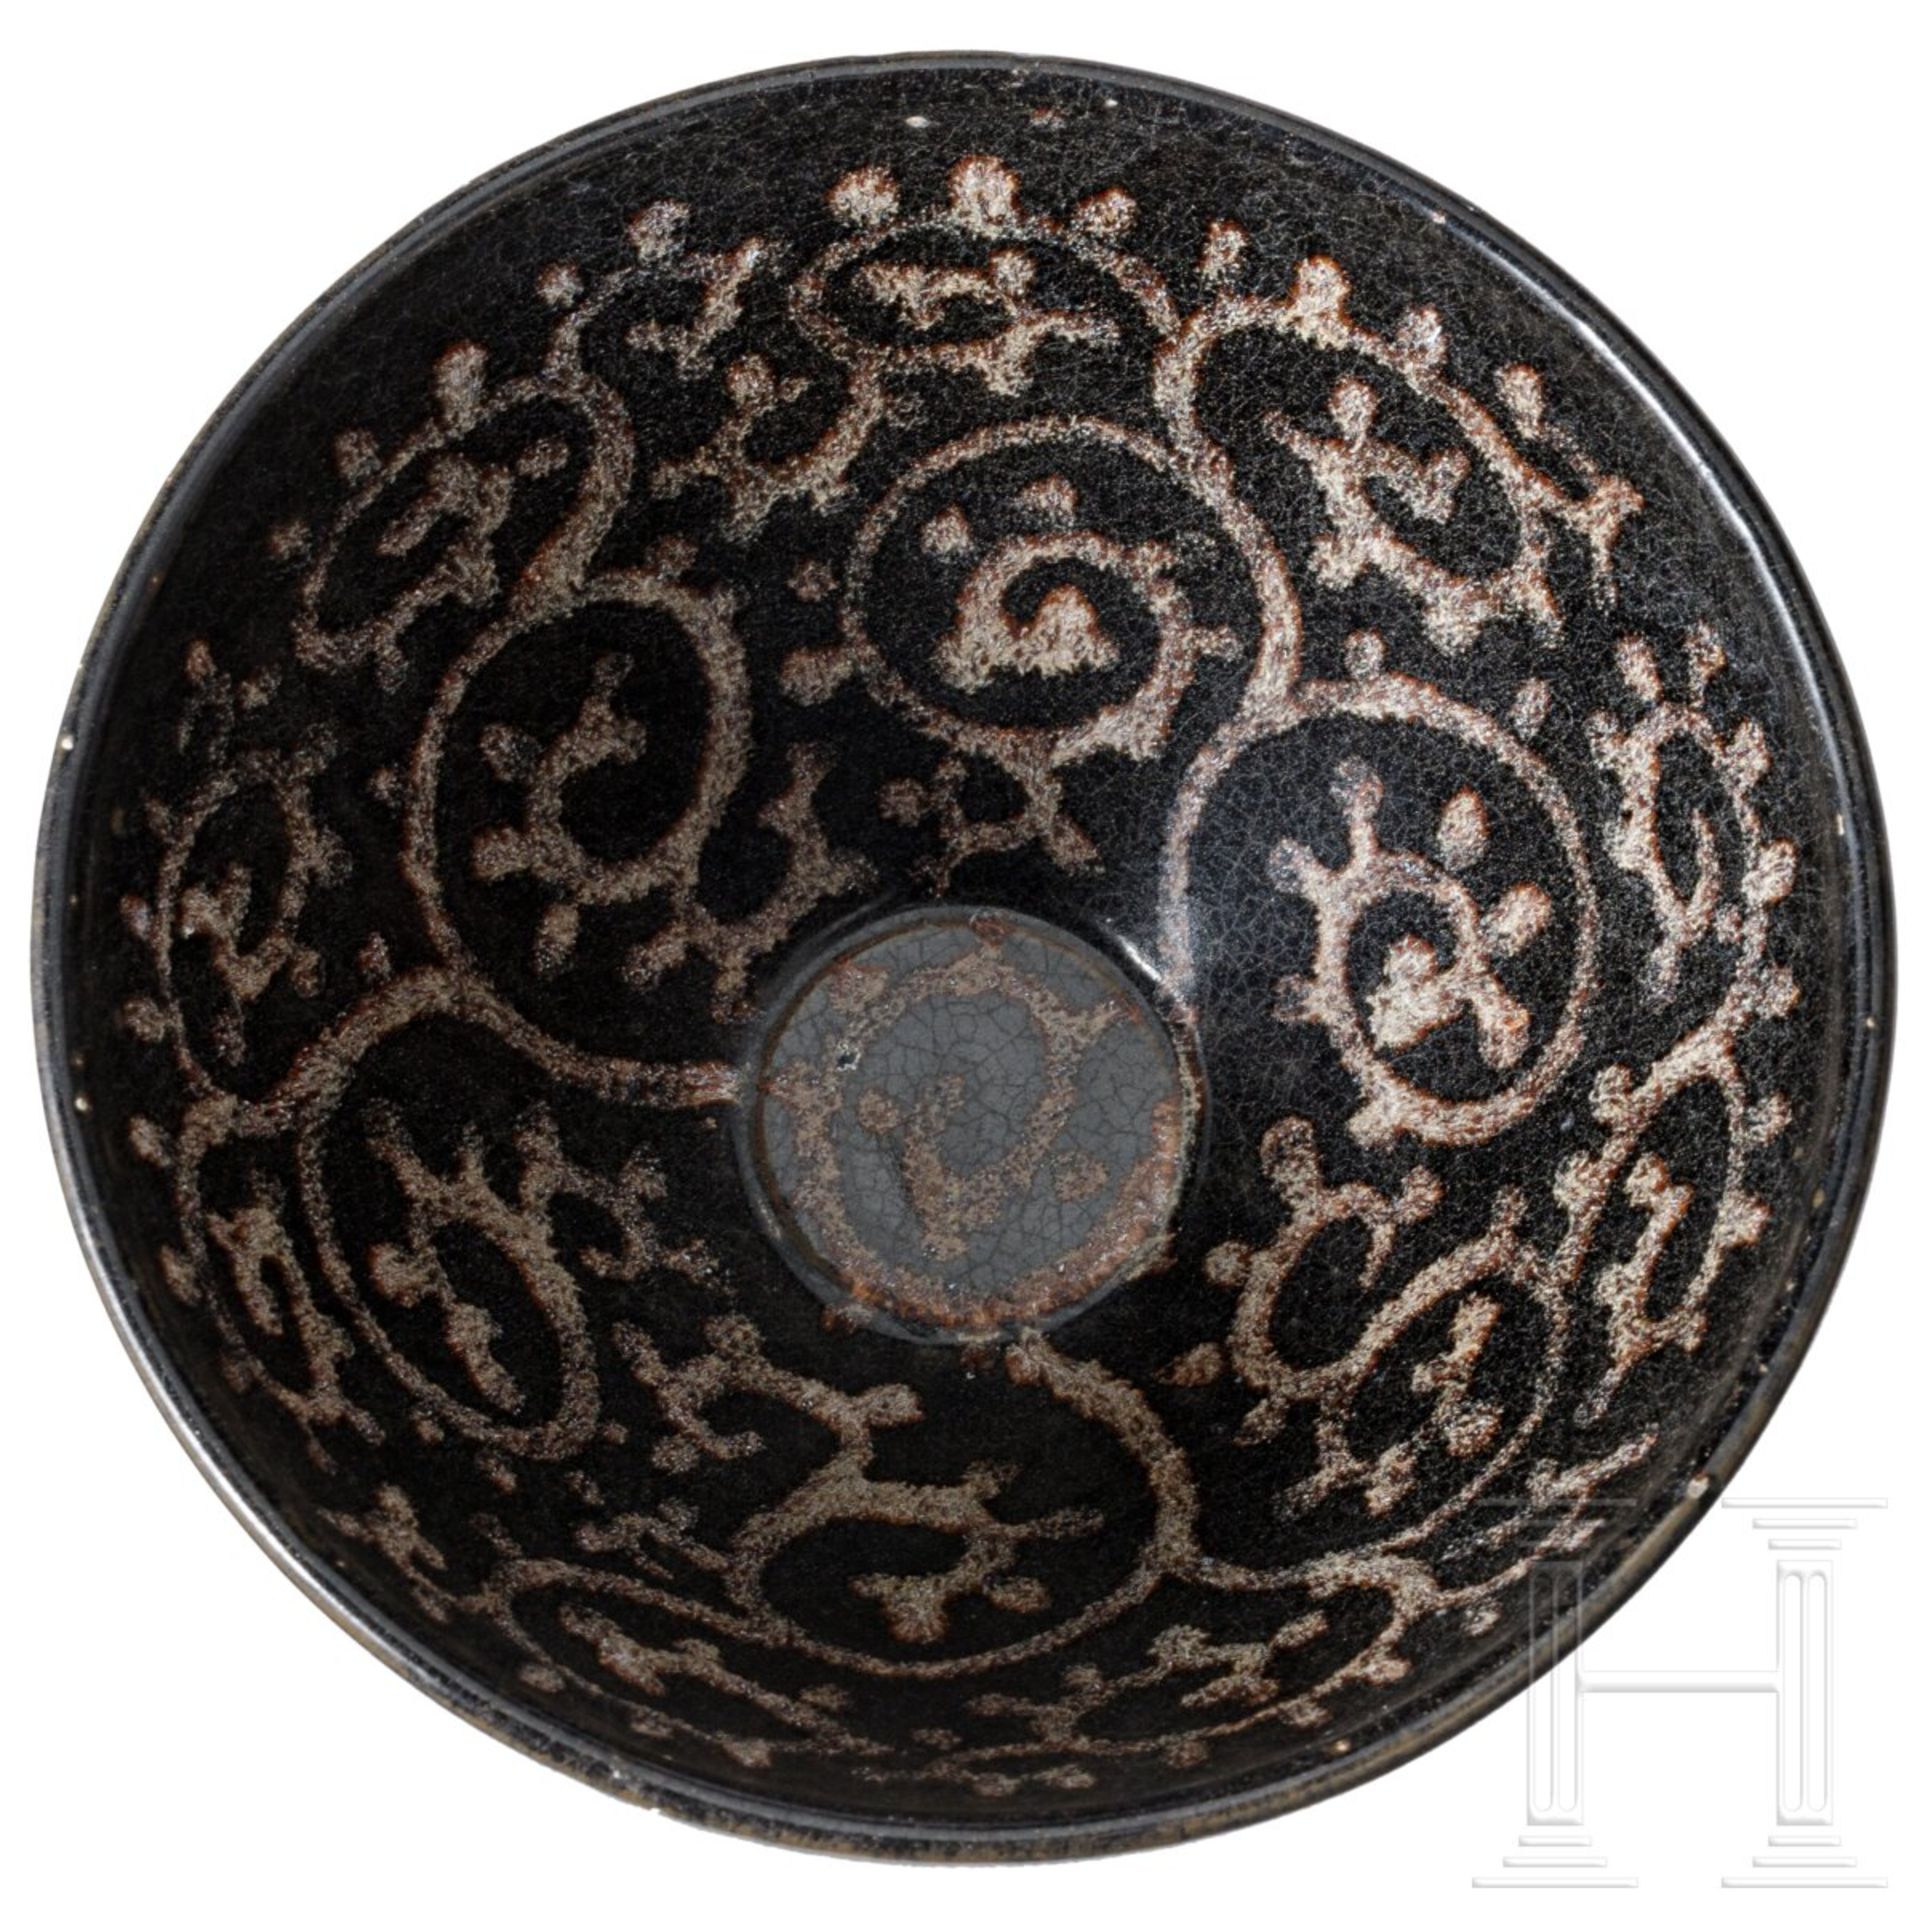 Sehr seltene Teeschale, bemalt im Jizhou-Tixi-Stil, südliche Song-/Yuan-Dynastie, 13. - 14. Jhdt. - Bild 2 aus 14